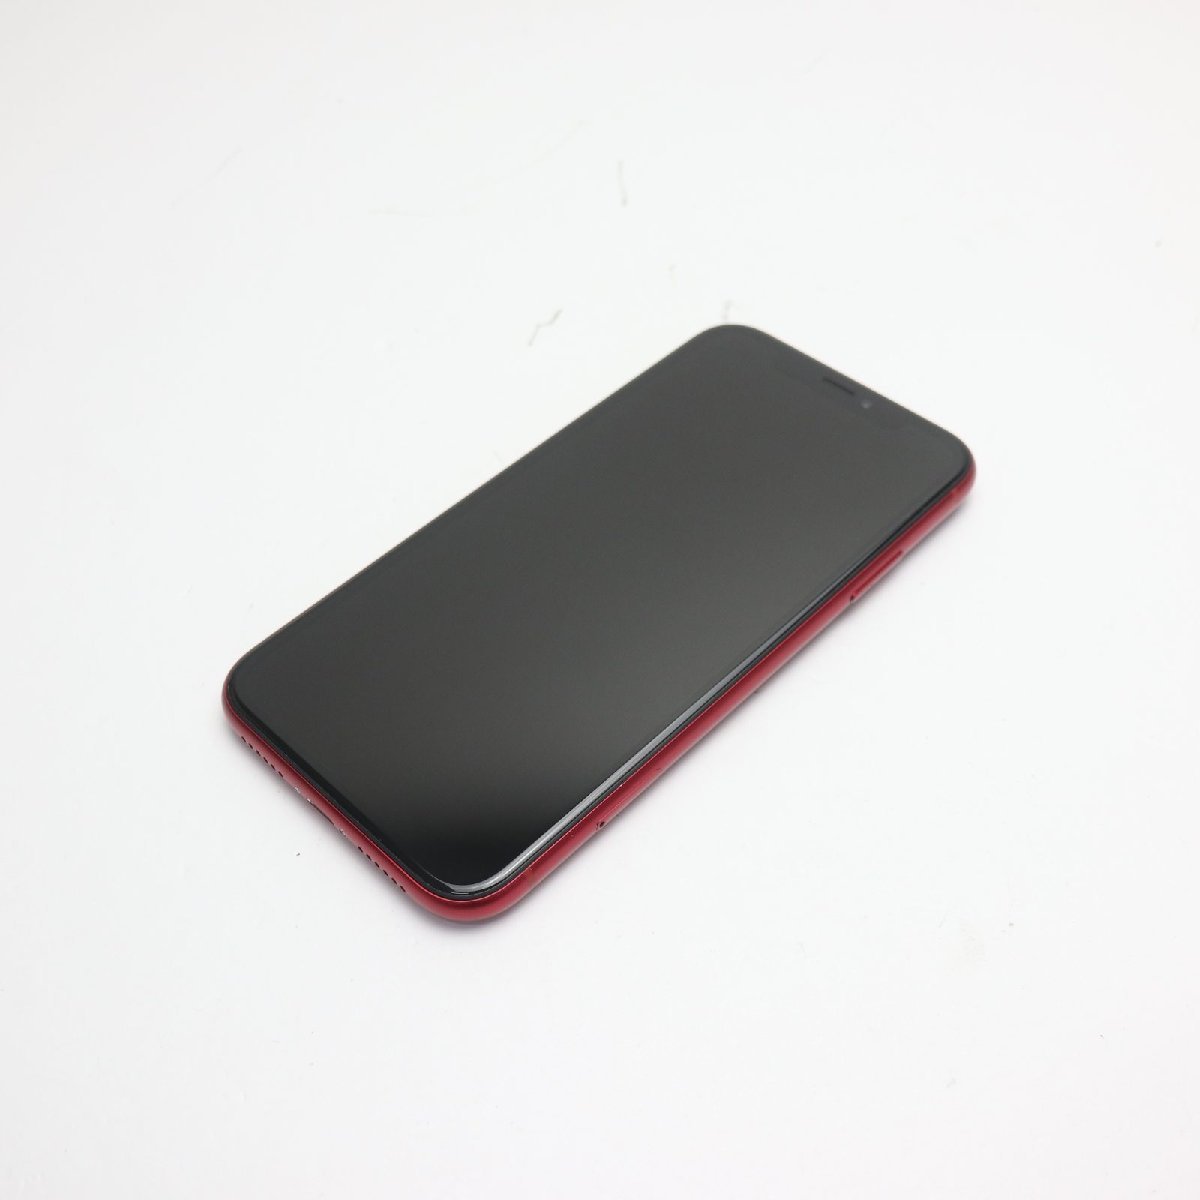 超美品 SIMフリー iPhoneXR 128GB レッド RED スマホ 白ロム 即日発送